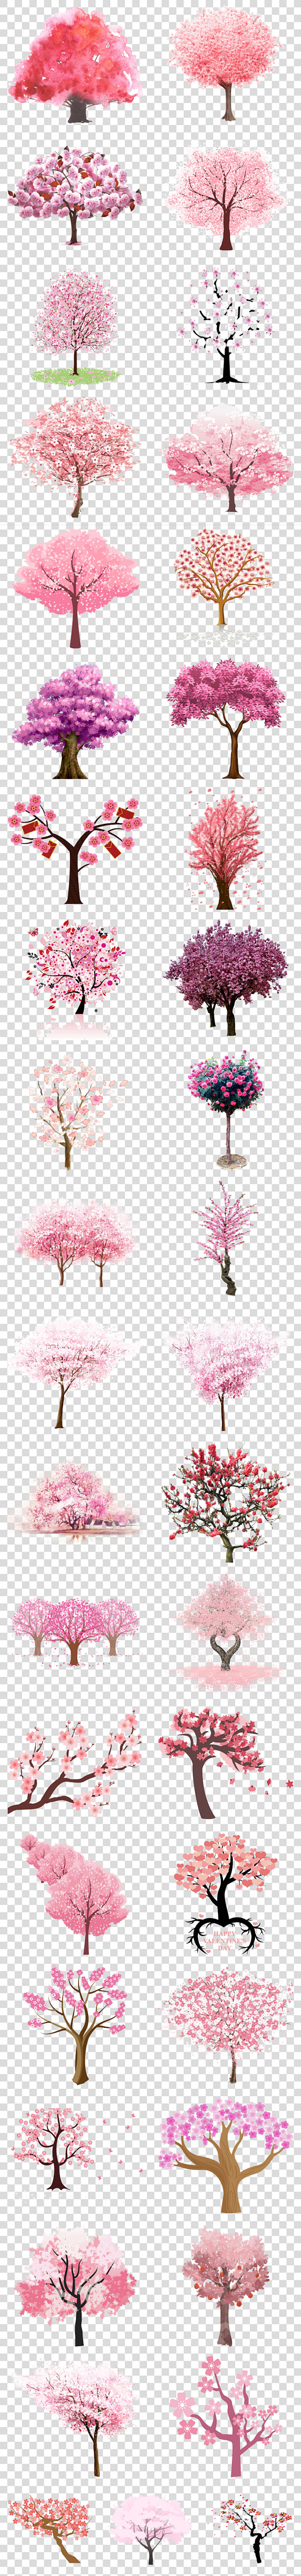 樱花树桃花树png图片大全卡通手绘浪漫手绘浪漫粉红色设计花朵粉色